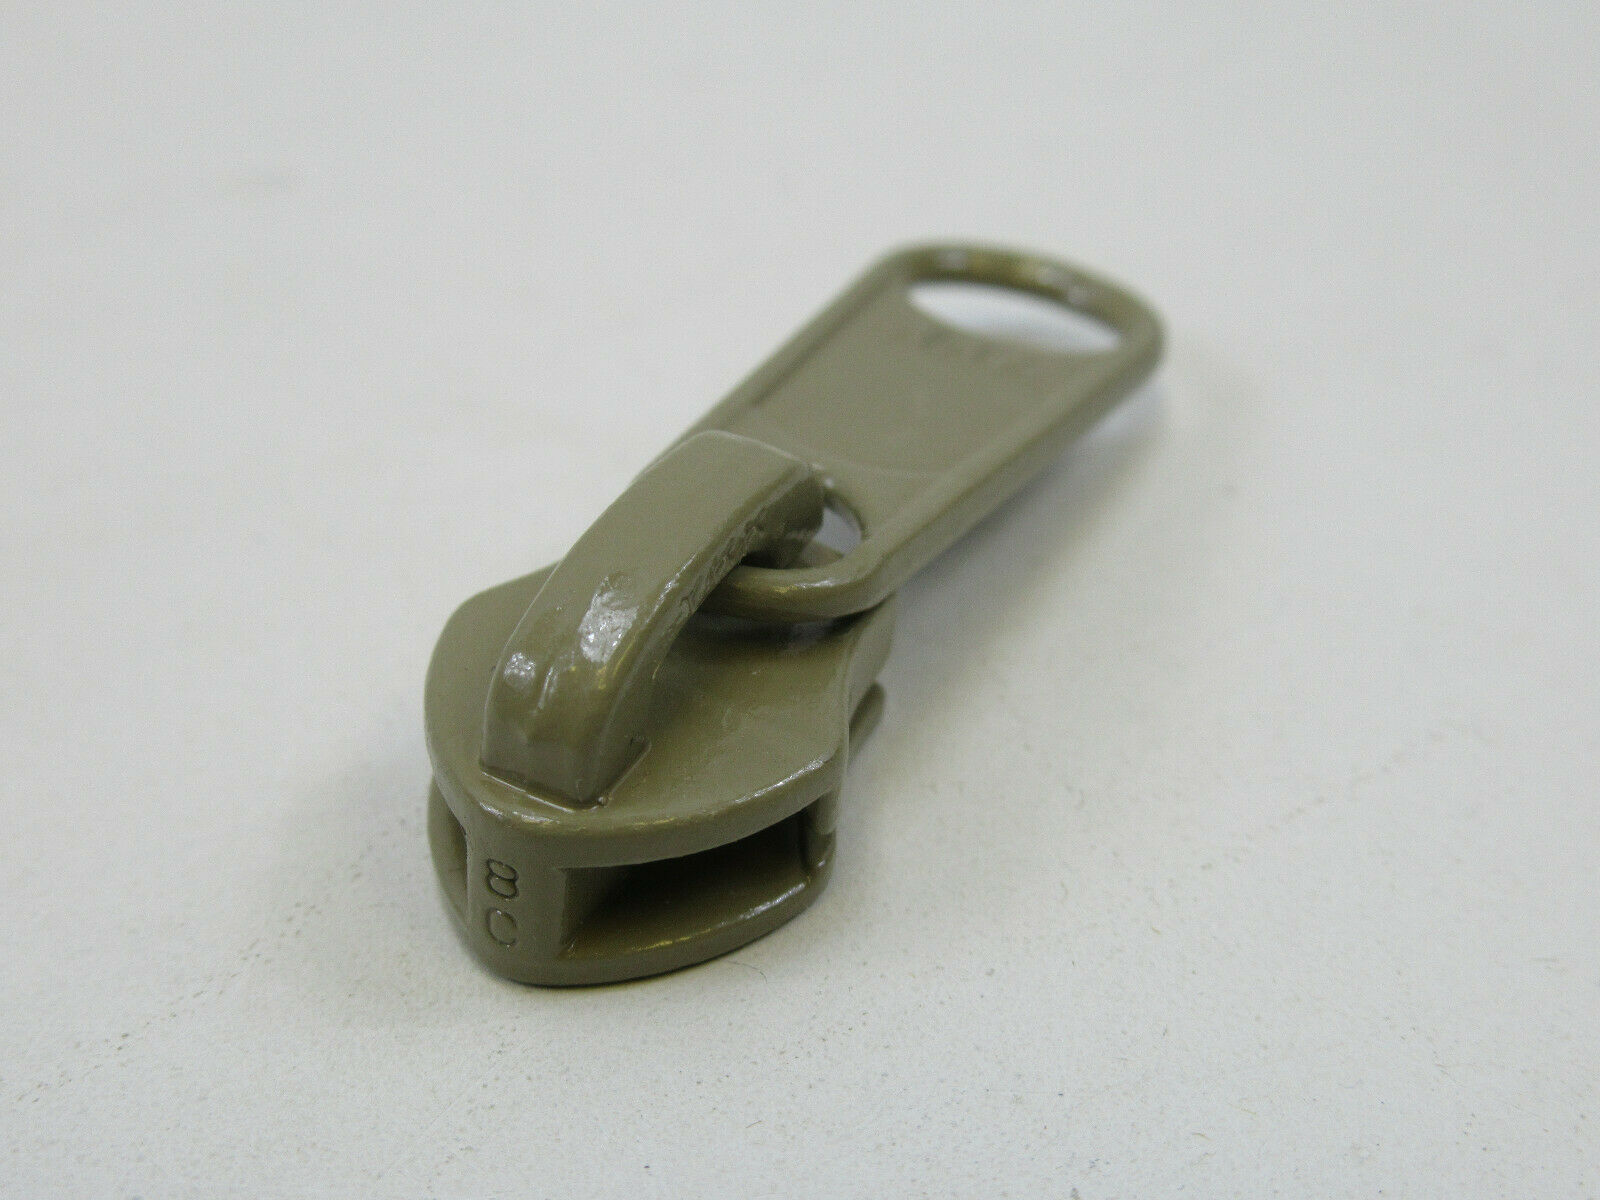 MilSpec Size 8 YKK Zipper Pull Slider used for #8 CF Nylon Coil Tape KHAKI